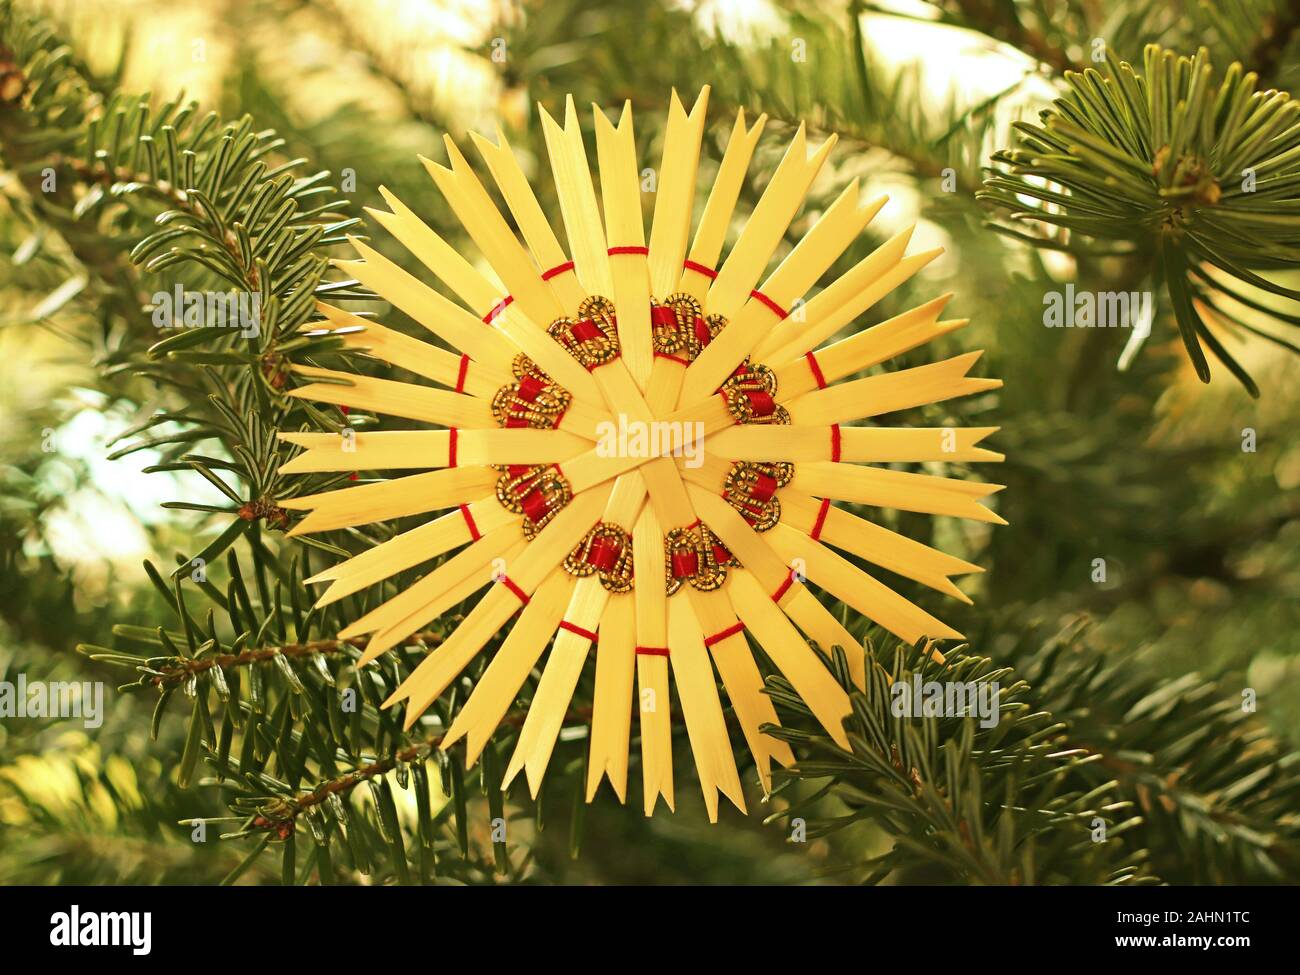 Noël arrière-plan avec le close-up of a star de paille accroché à un arbre de Noël Banque D'Images